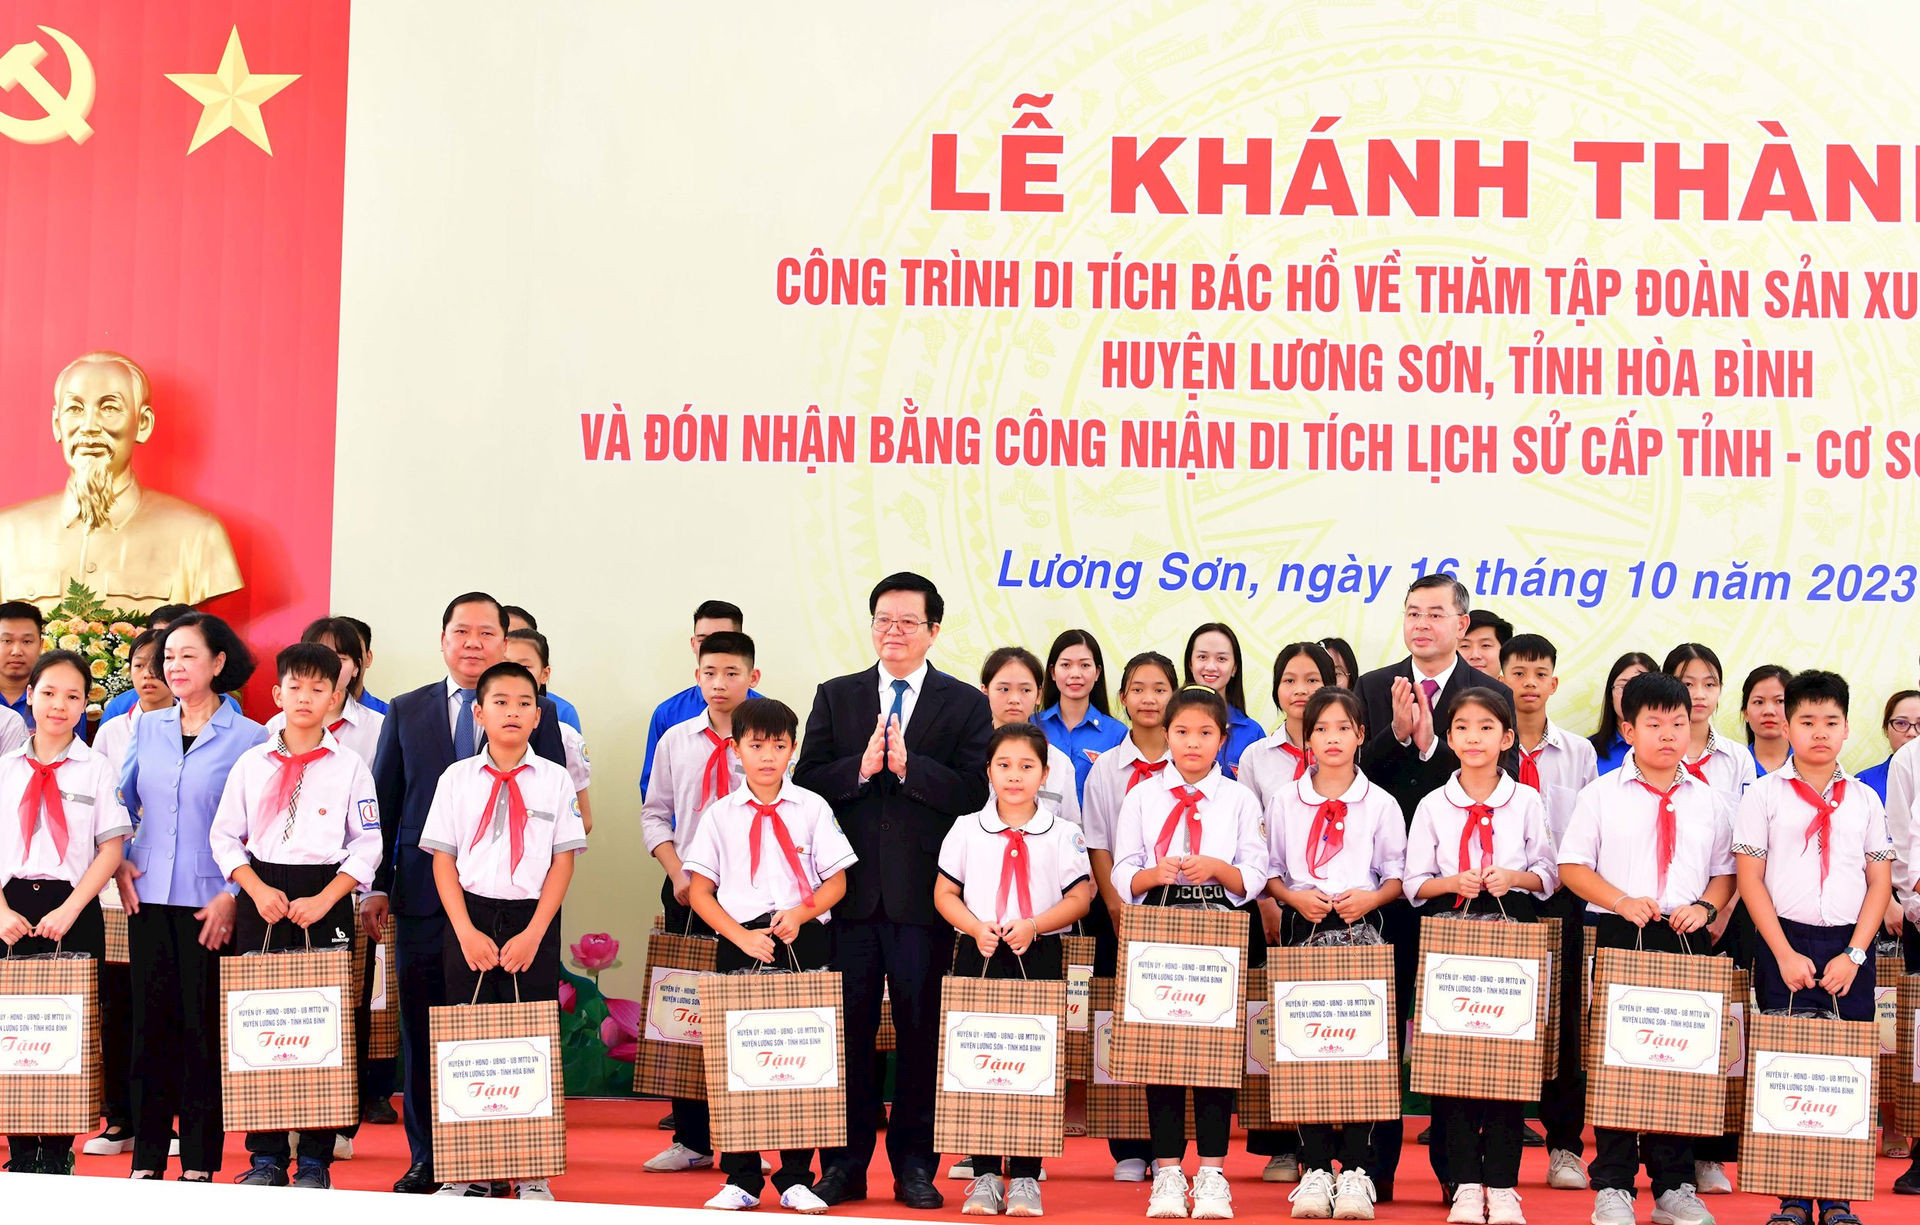 Nhân dịp này, đồng chí Trương Thị Mai, đồng chí Ngô Văn Tuấn và các đại biểu đã trao tặng nhiều phần quà ý nghĩa cho các em học sinh có thành tích xuất sắc trên địa bàn huyện.